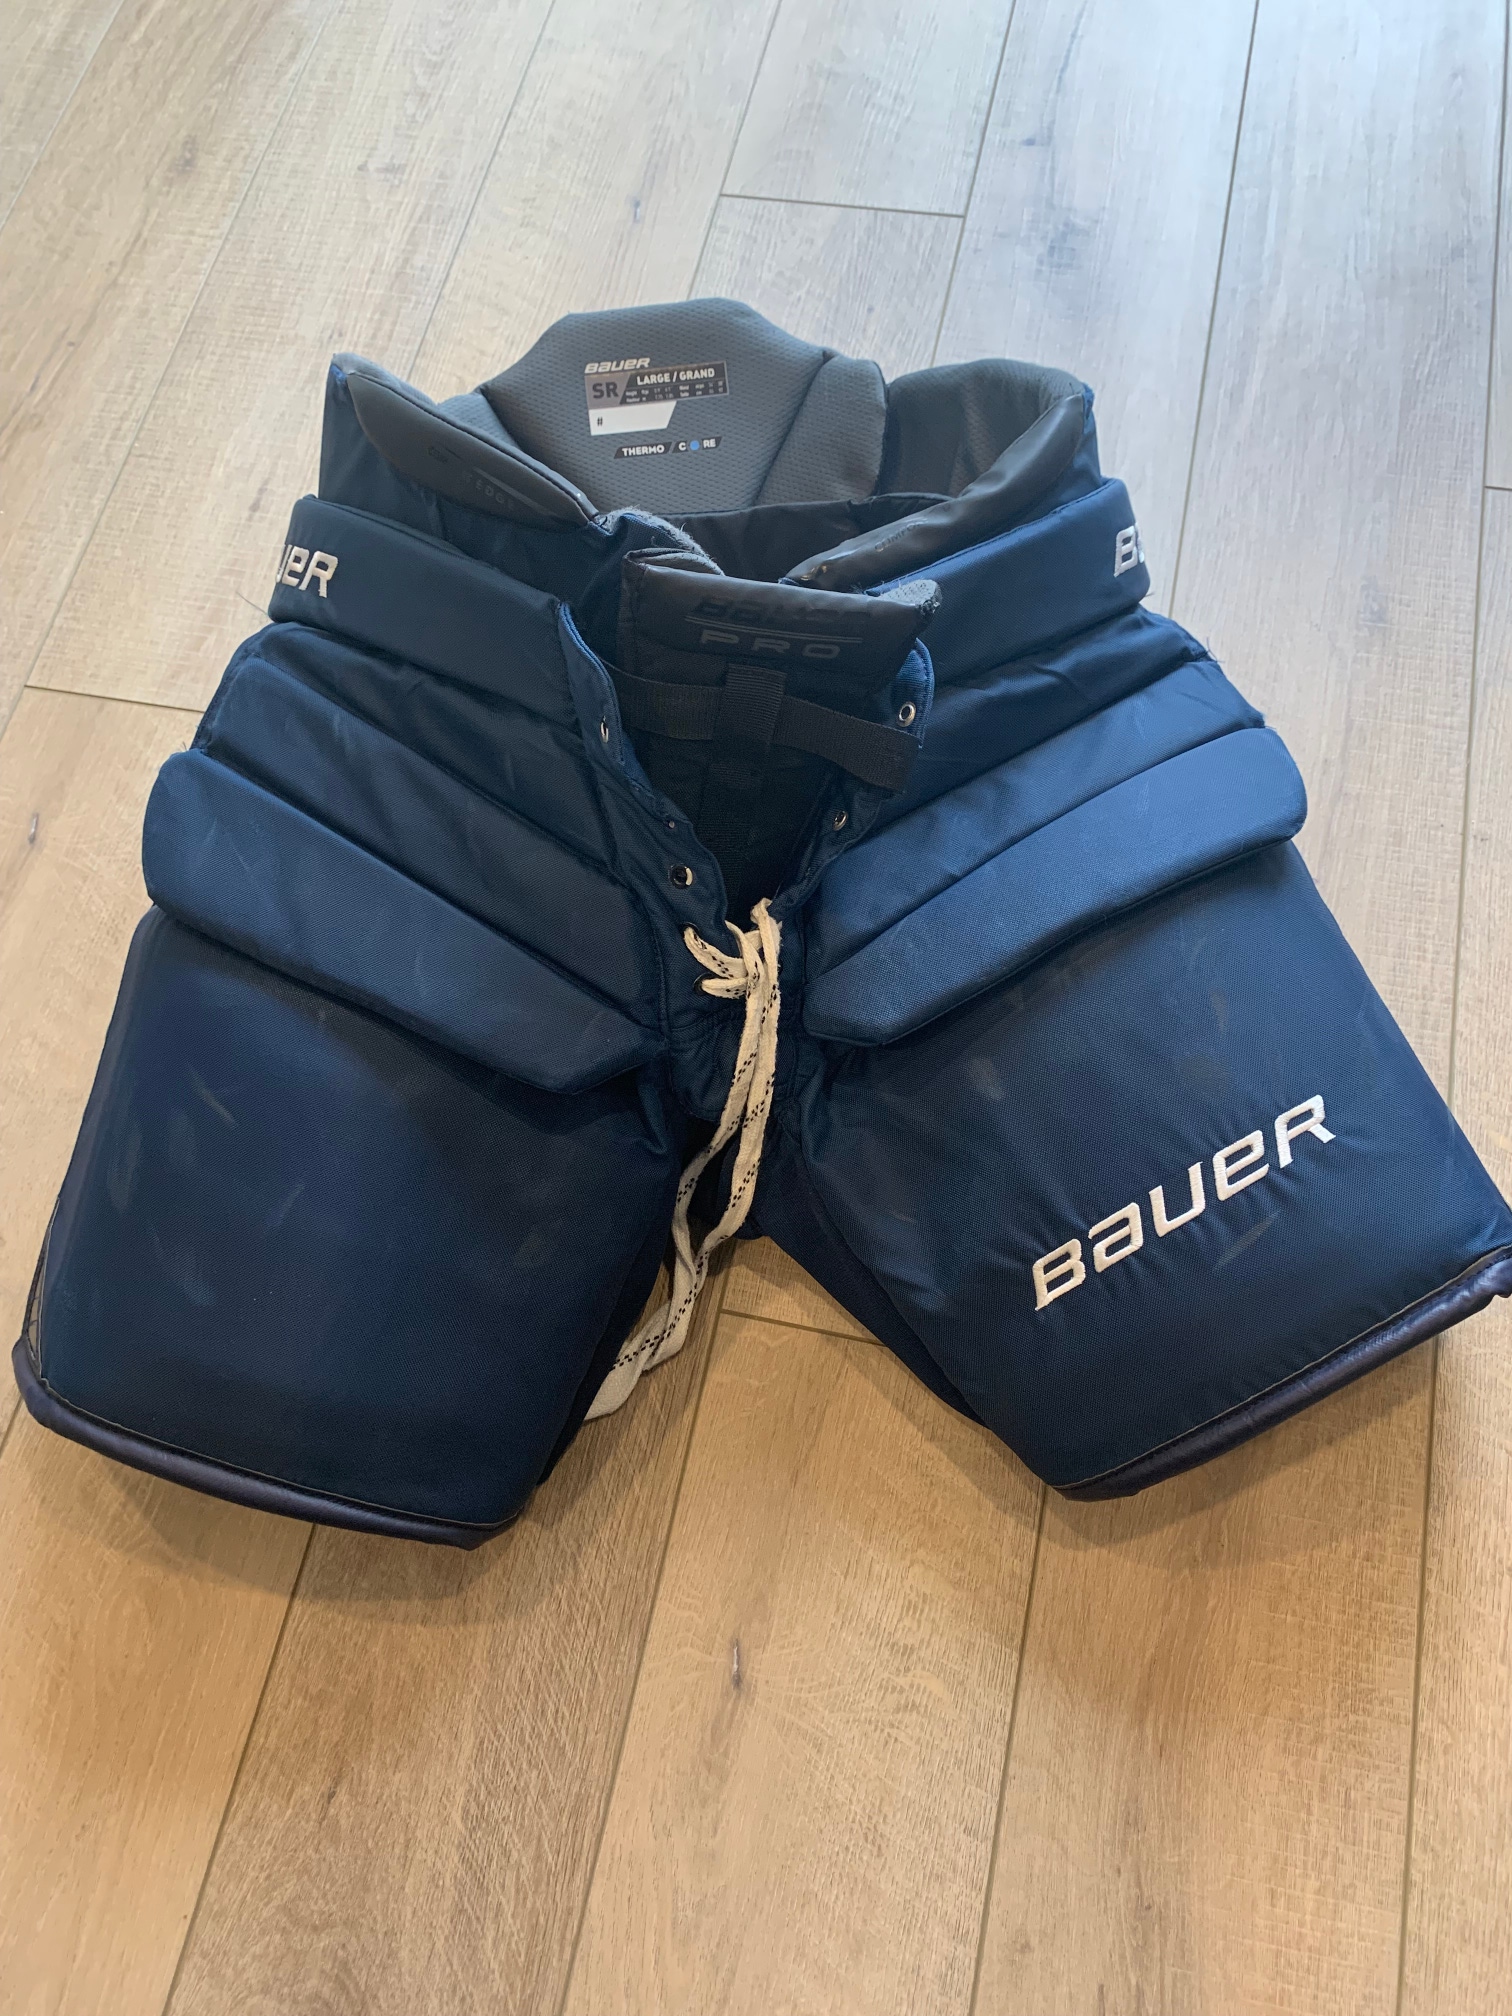 Used Large Bauer  Pro Hockey Goalie Pants